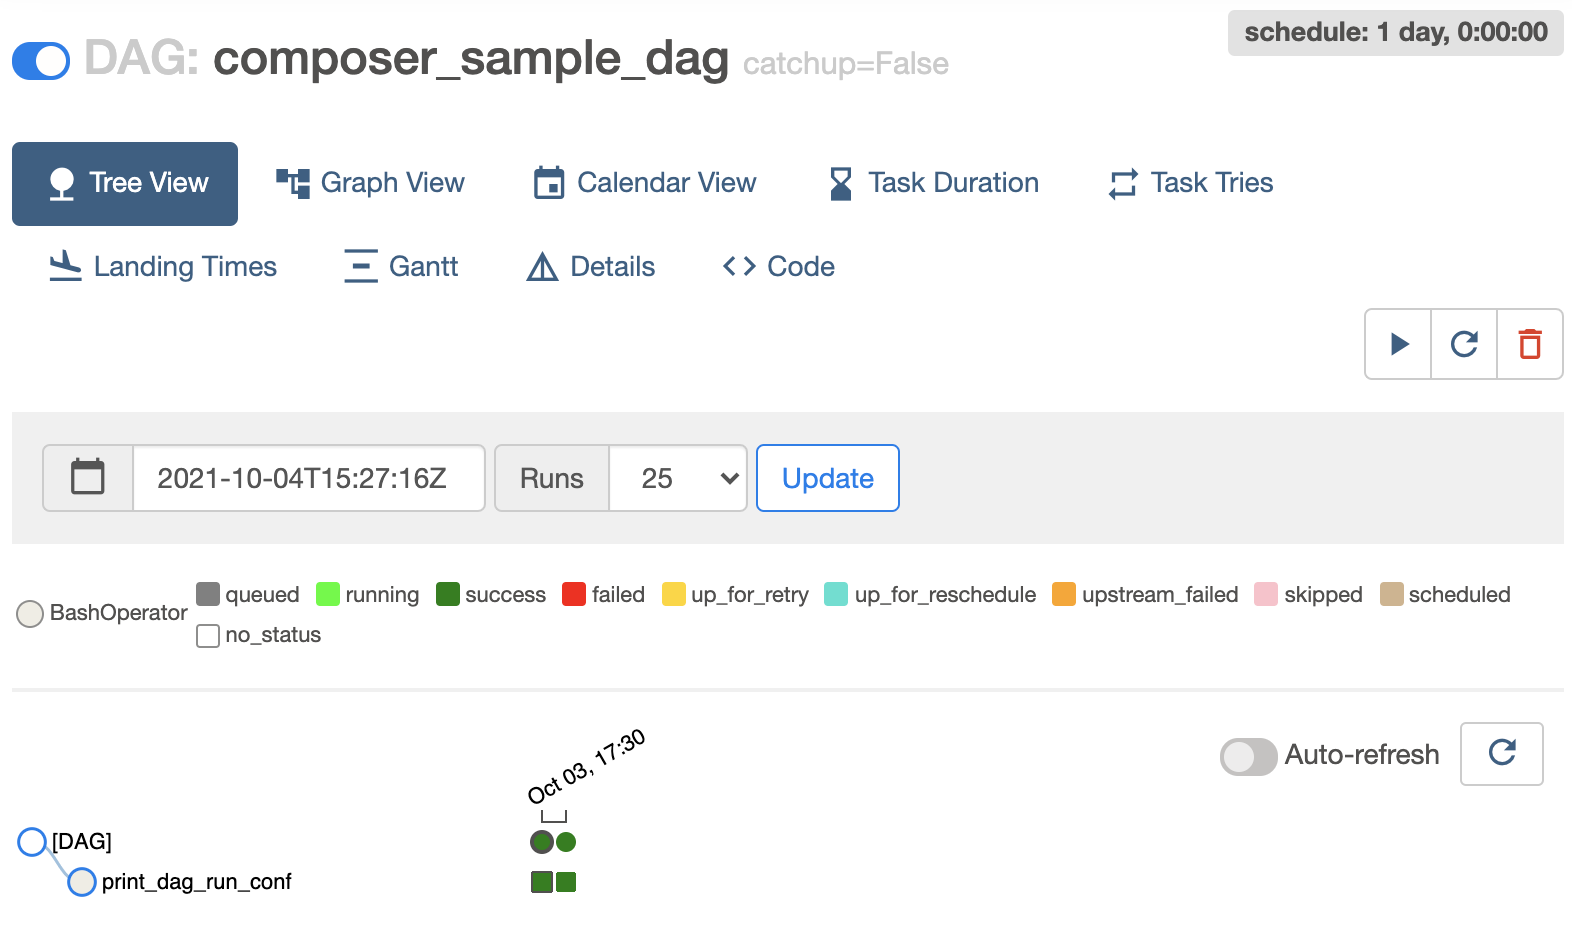 Visualizzazione ad albero del DAG Composer_sample_dags